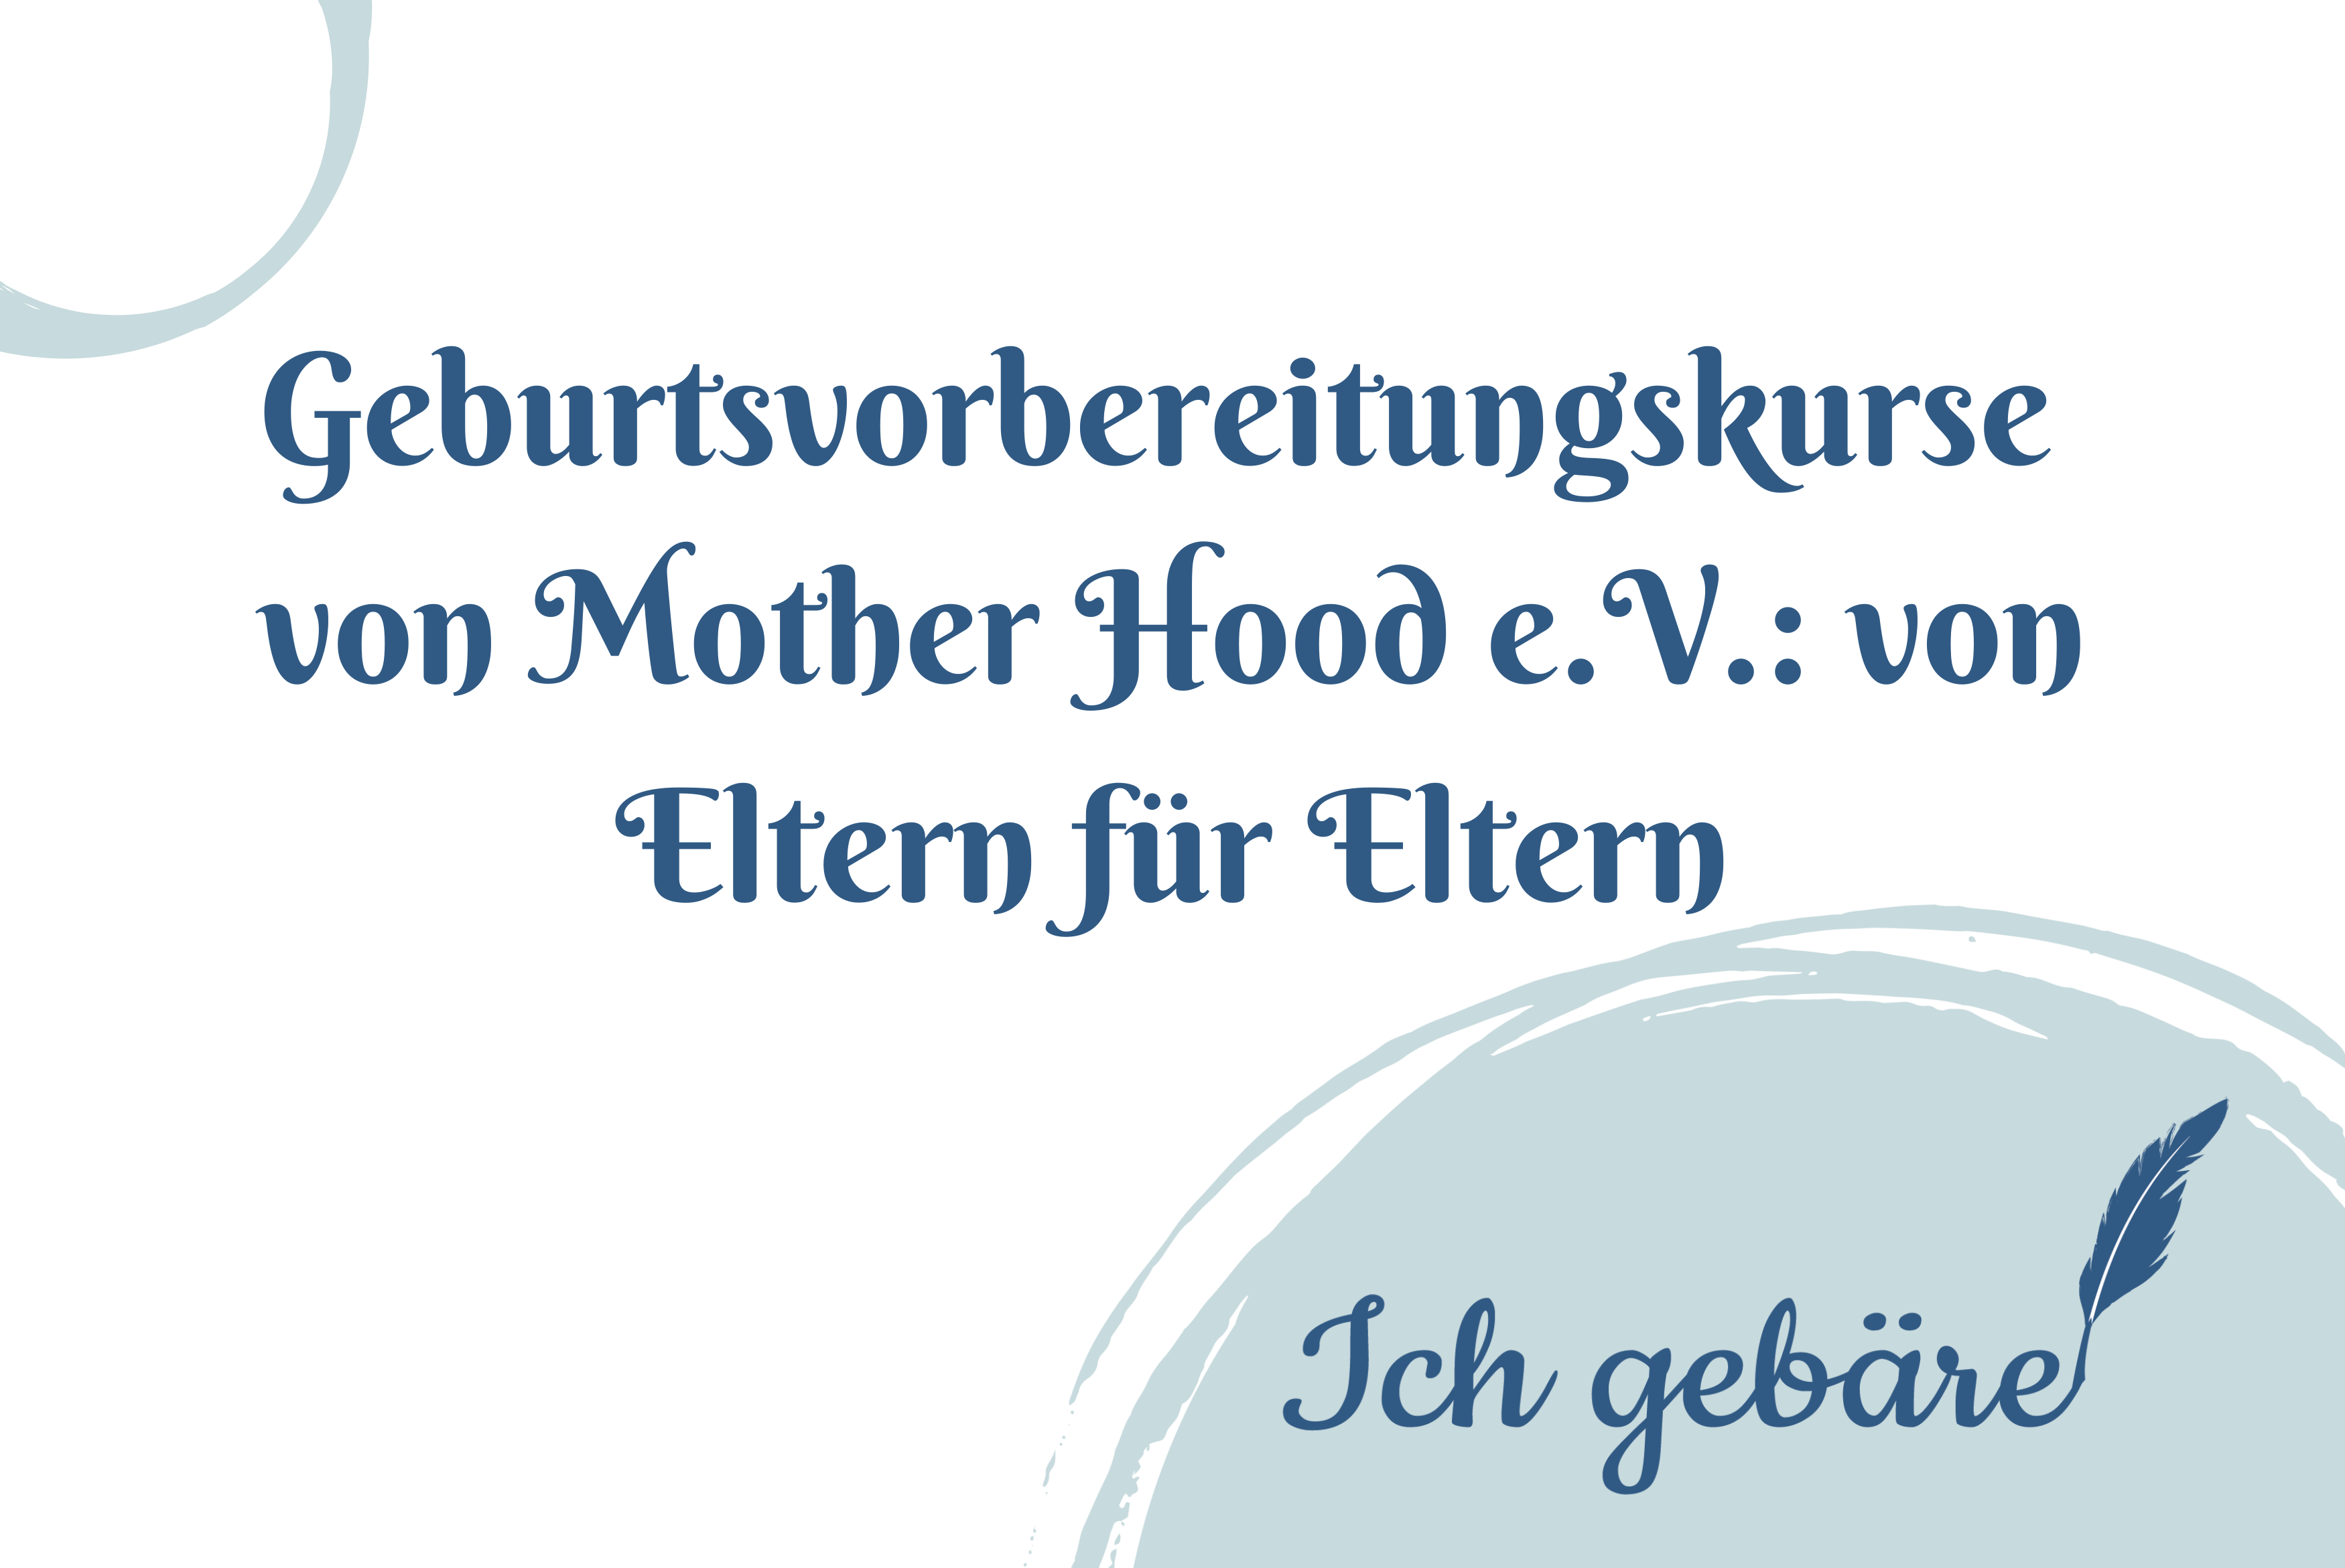 Titelbild: Geburtsvorbereitungskurse von Mother Hood e.V. von Eltern für Eltern